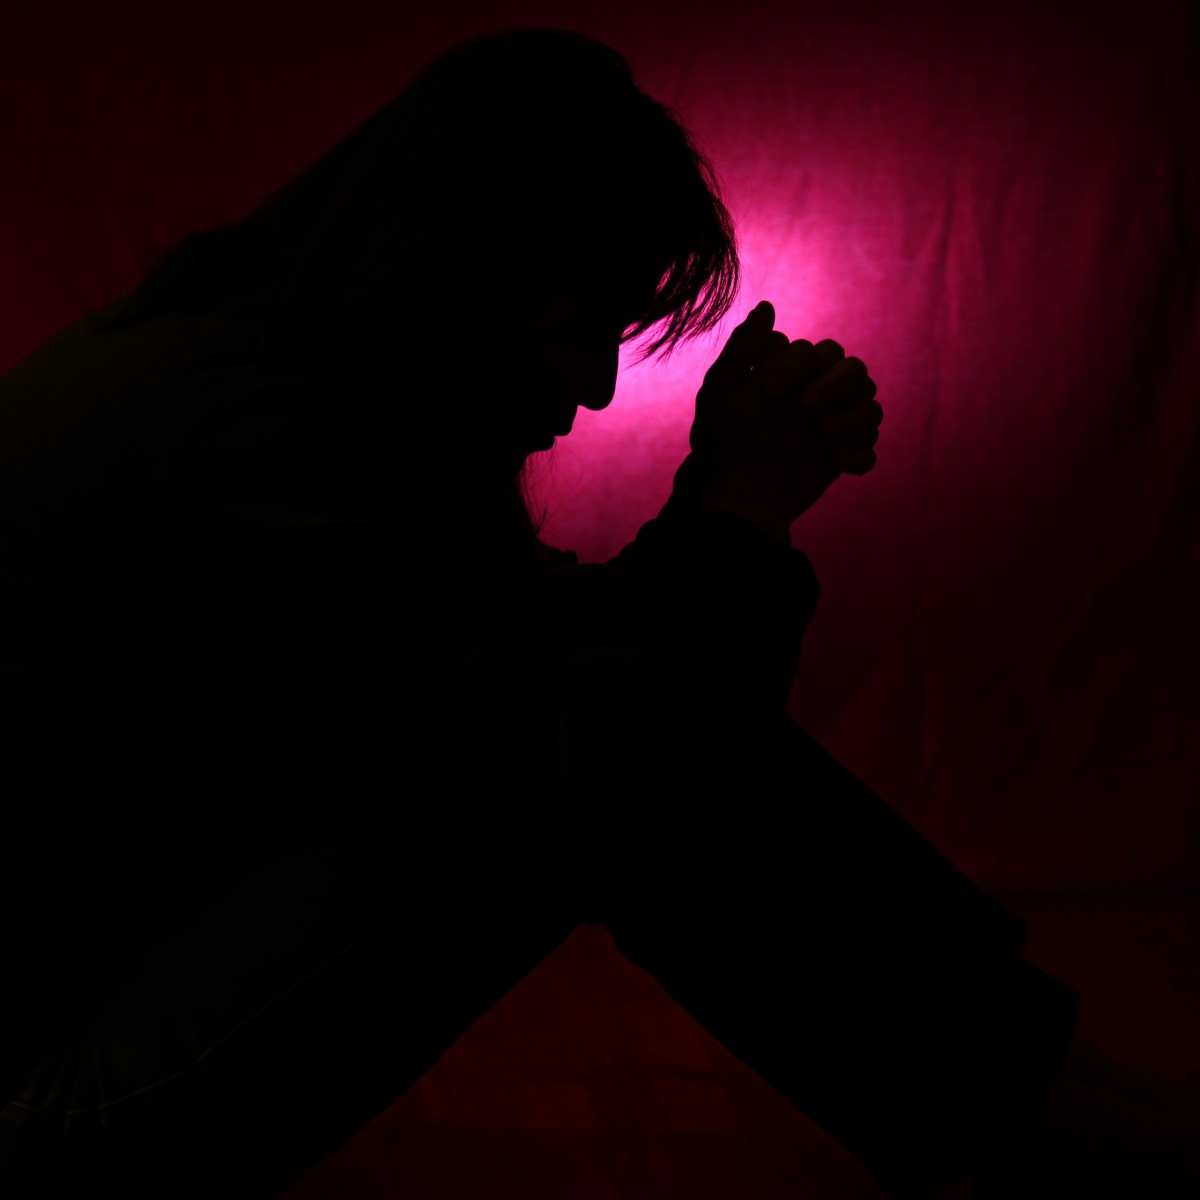 man praying silhouette